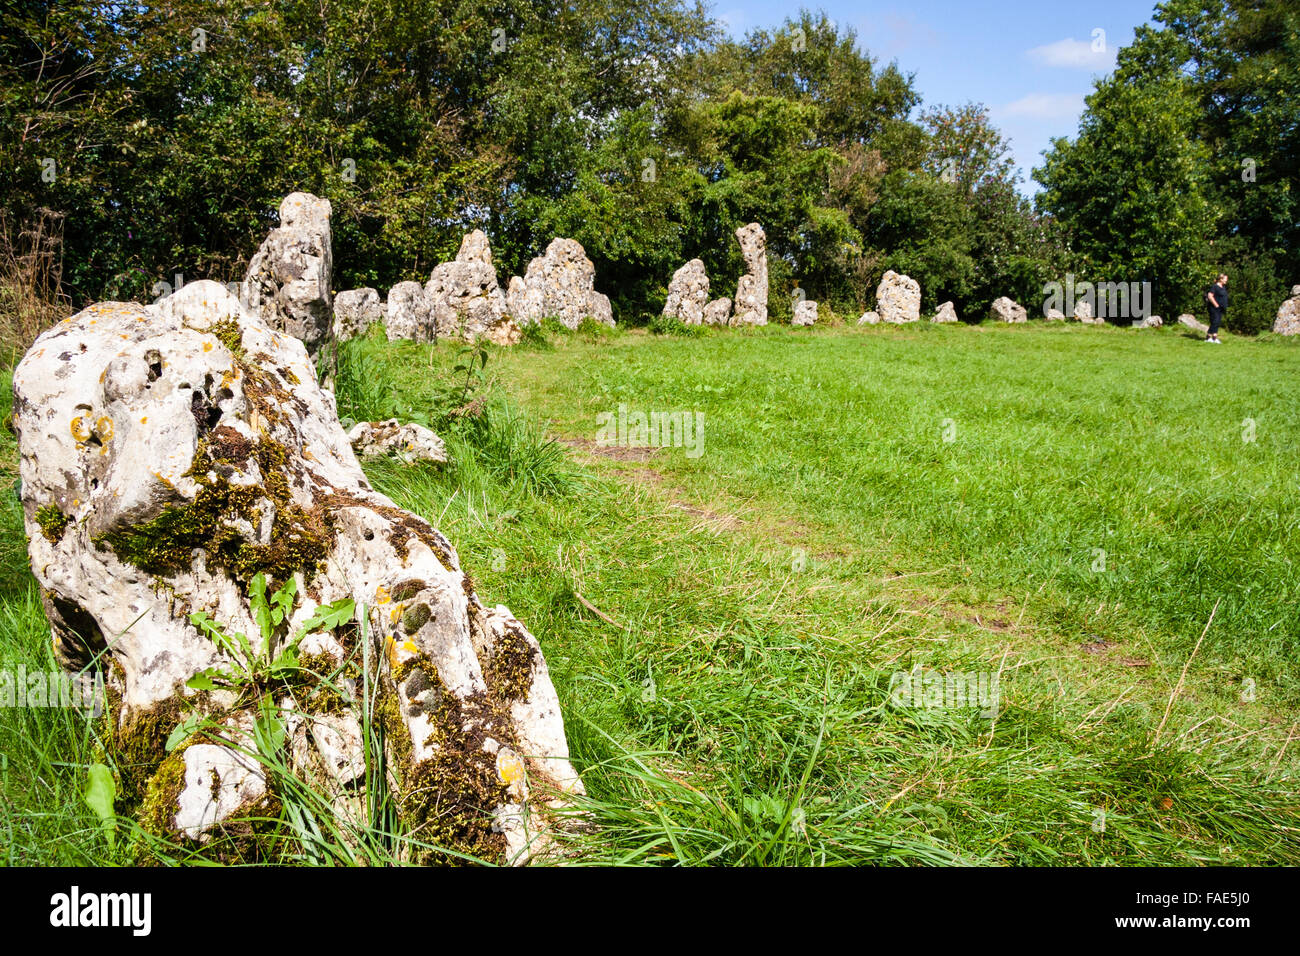 England, Oxfordshire, der Rollright Stones. Eine späte Jungsteinzeit, Bronzezeit, feierliche Stone Circle, genannt "King's Men". Tagsüber, Sommer, blauer Himmel. Stockfoto